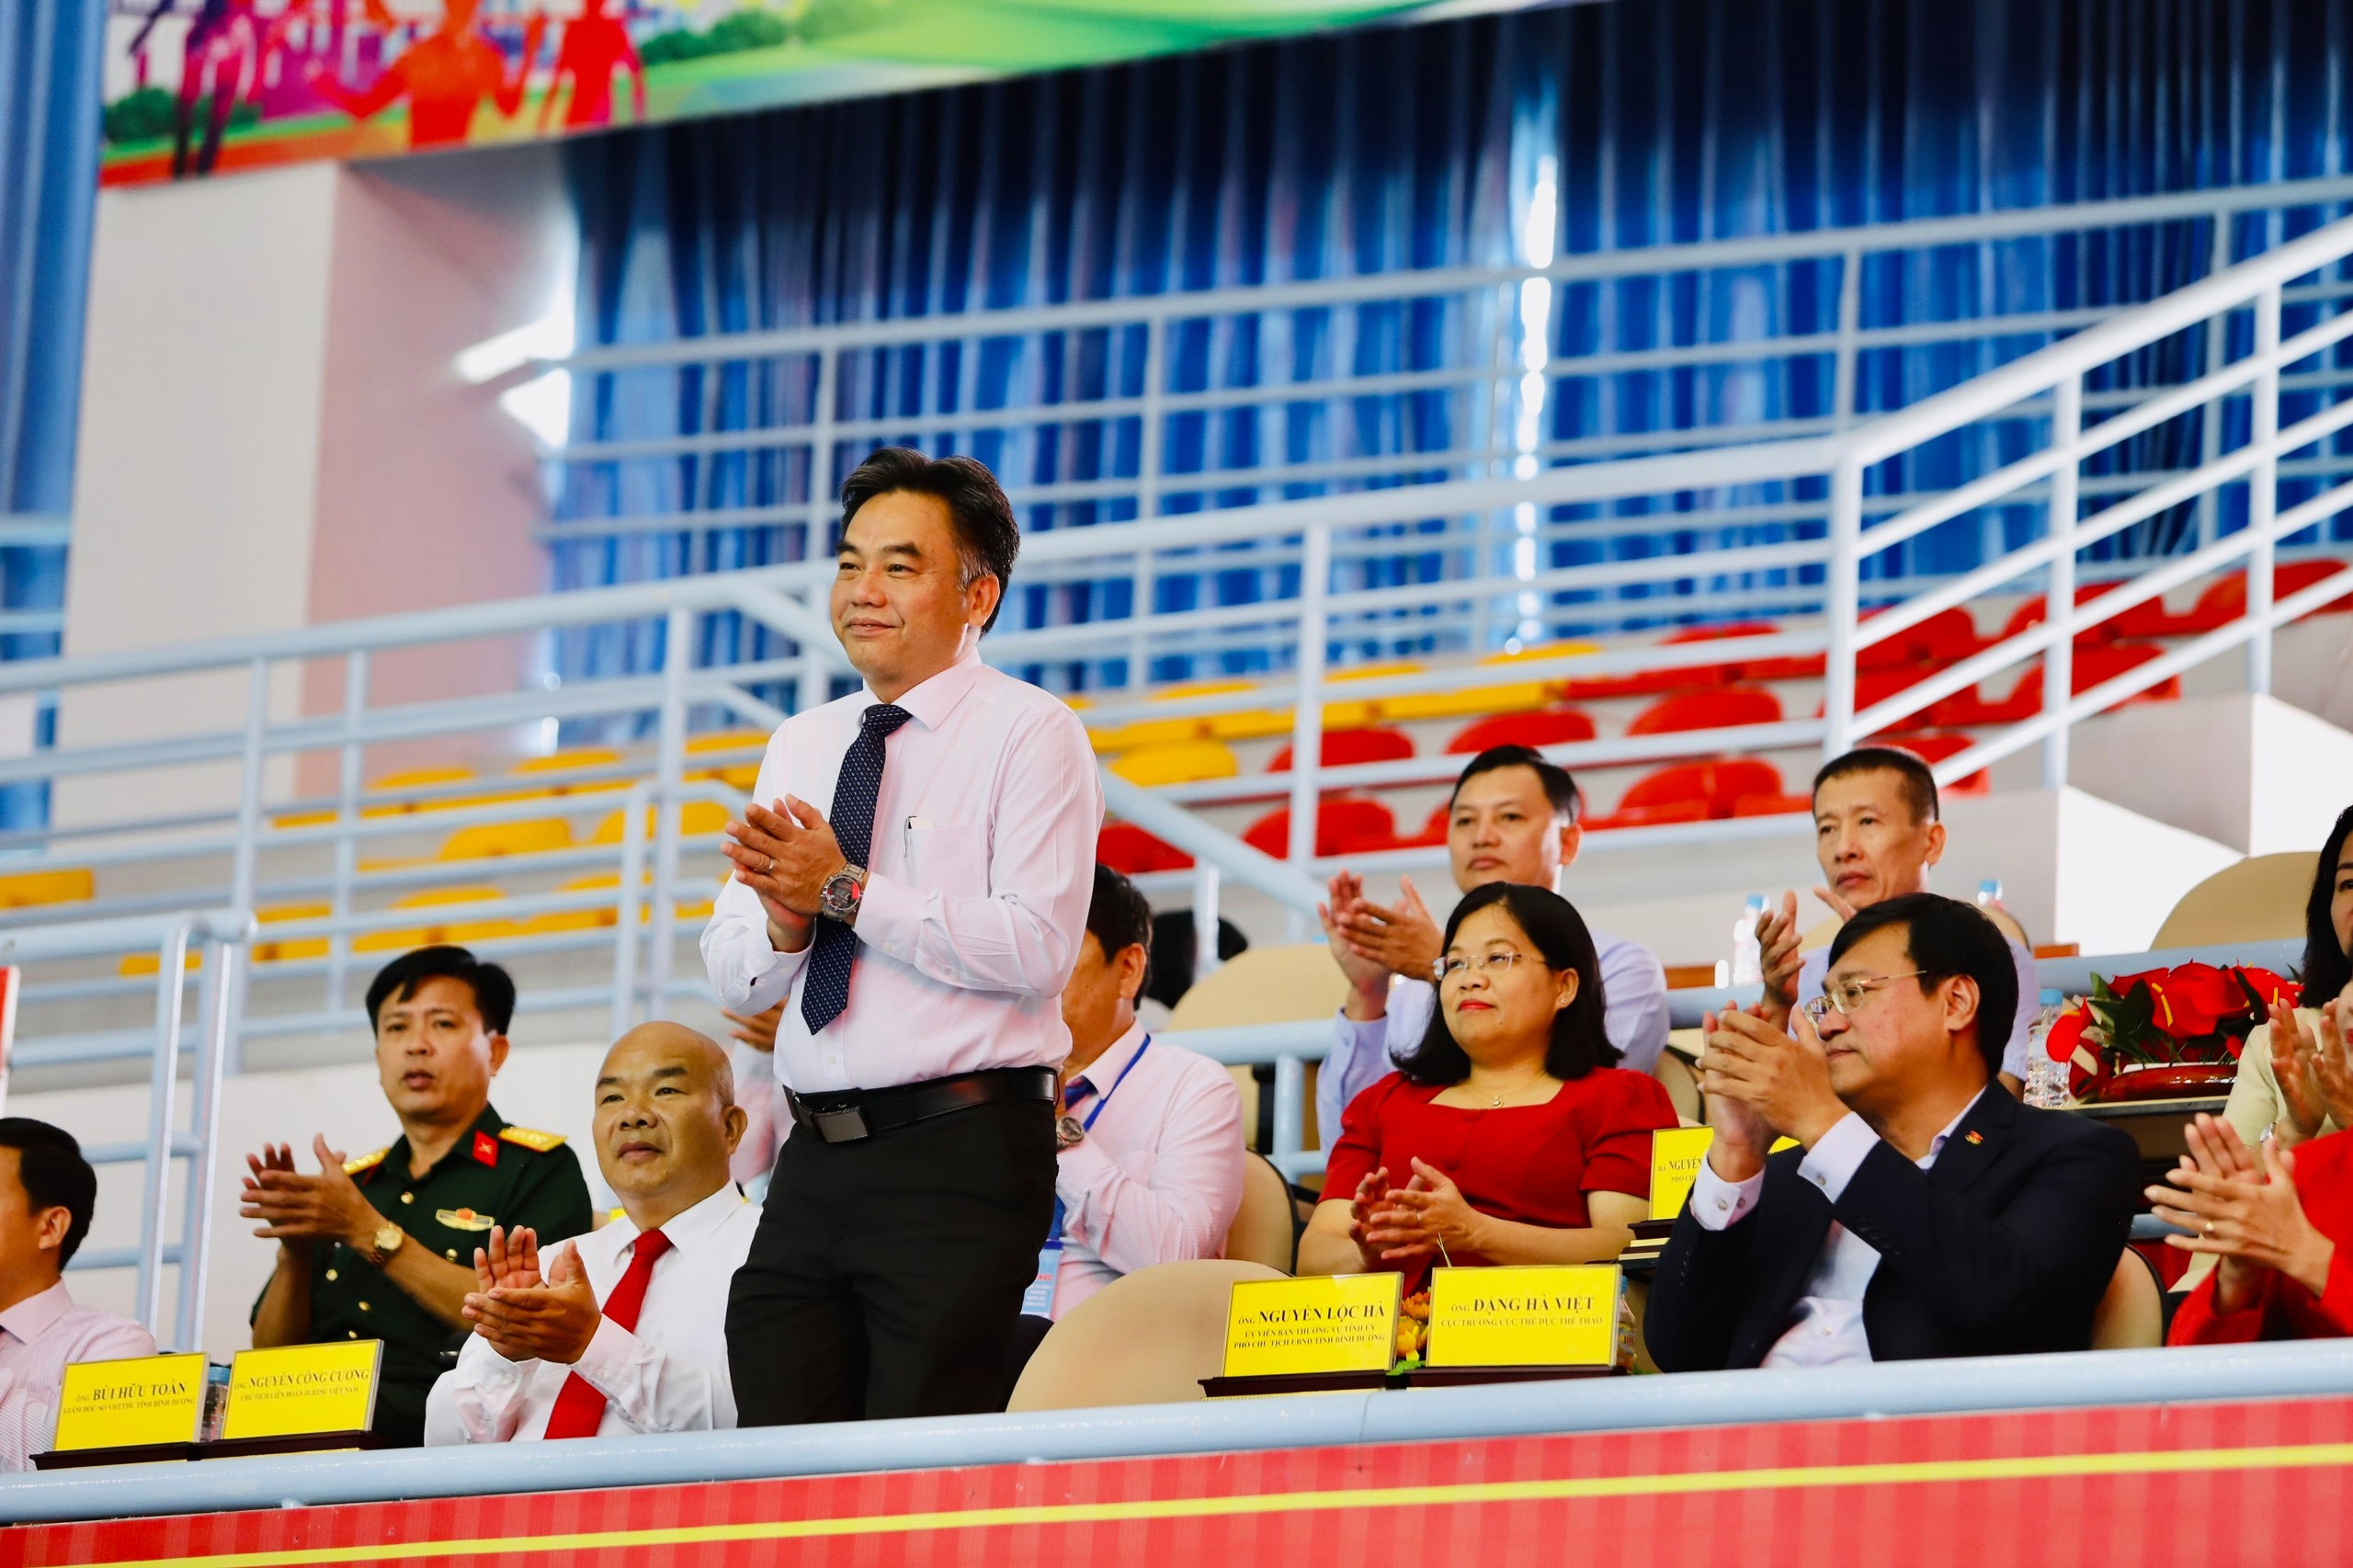 Đồng chí Nguyễn Lộc Hà - Ủy viên Thường vụ Tỉnh ủy, Phó Chủ tịch UBND tỉnh Bình Dương và các đồng chí lãnh đạo tỉnh Bình Dương đến dự Lễ khai mạc giải.